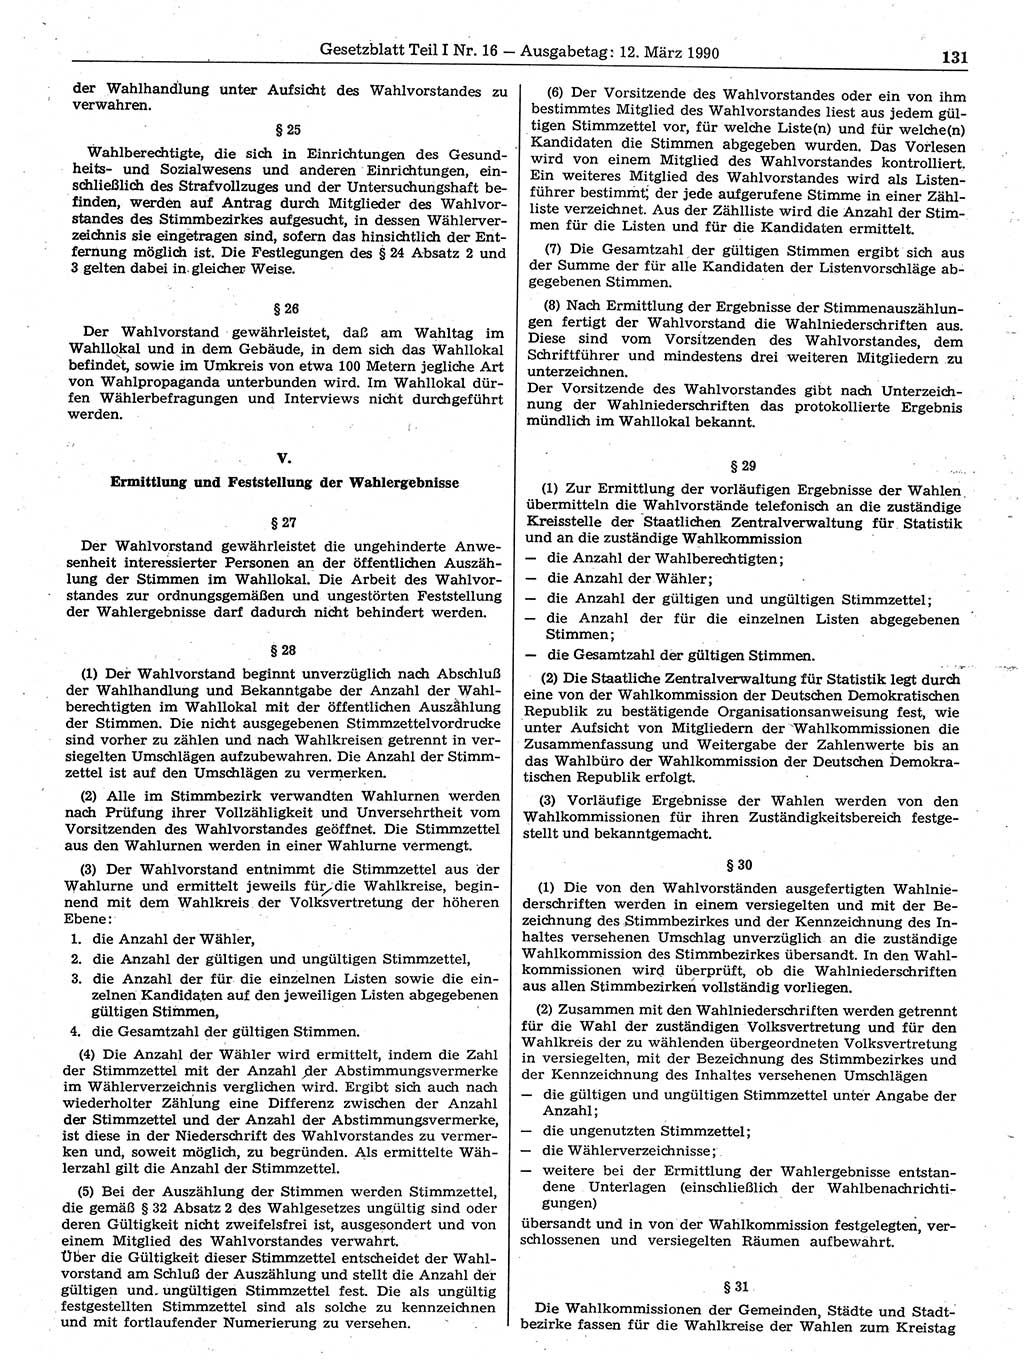 Gesetzblatt (GBl.) der Deutschen Demokratischen Republik (DDR) Teil Ⅰ 1990, Seite 131 (GBl. DDR Ⅰ 1990, S. 131)